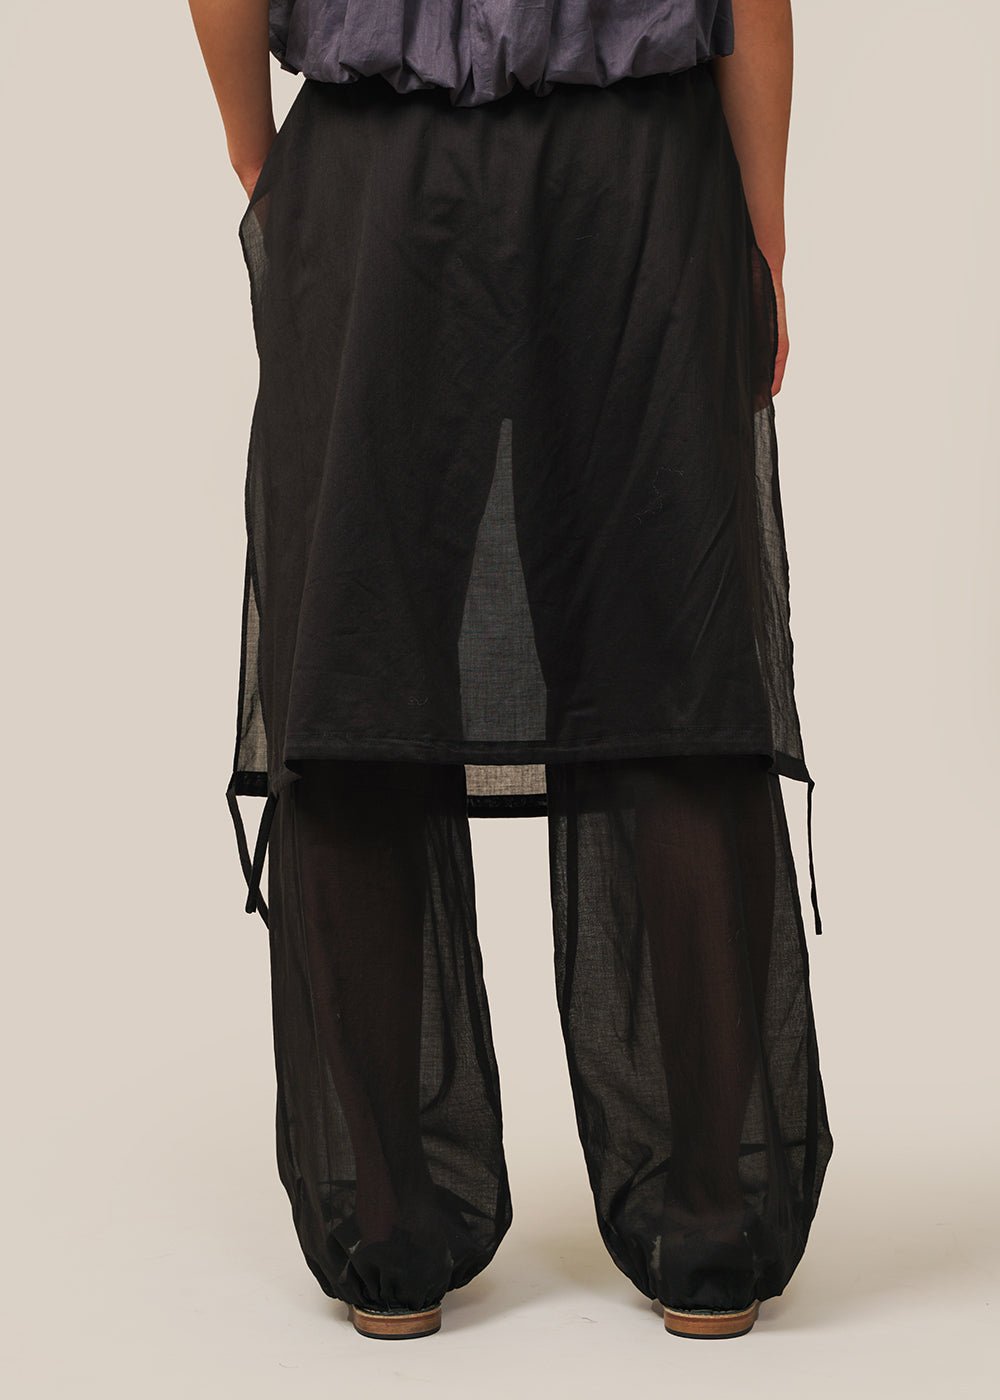 AMOMENTO Black Drawstring Layered Banding Pants - New Classics Studios Sustainable Ethical Fashion Canada